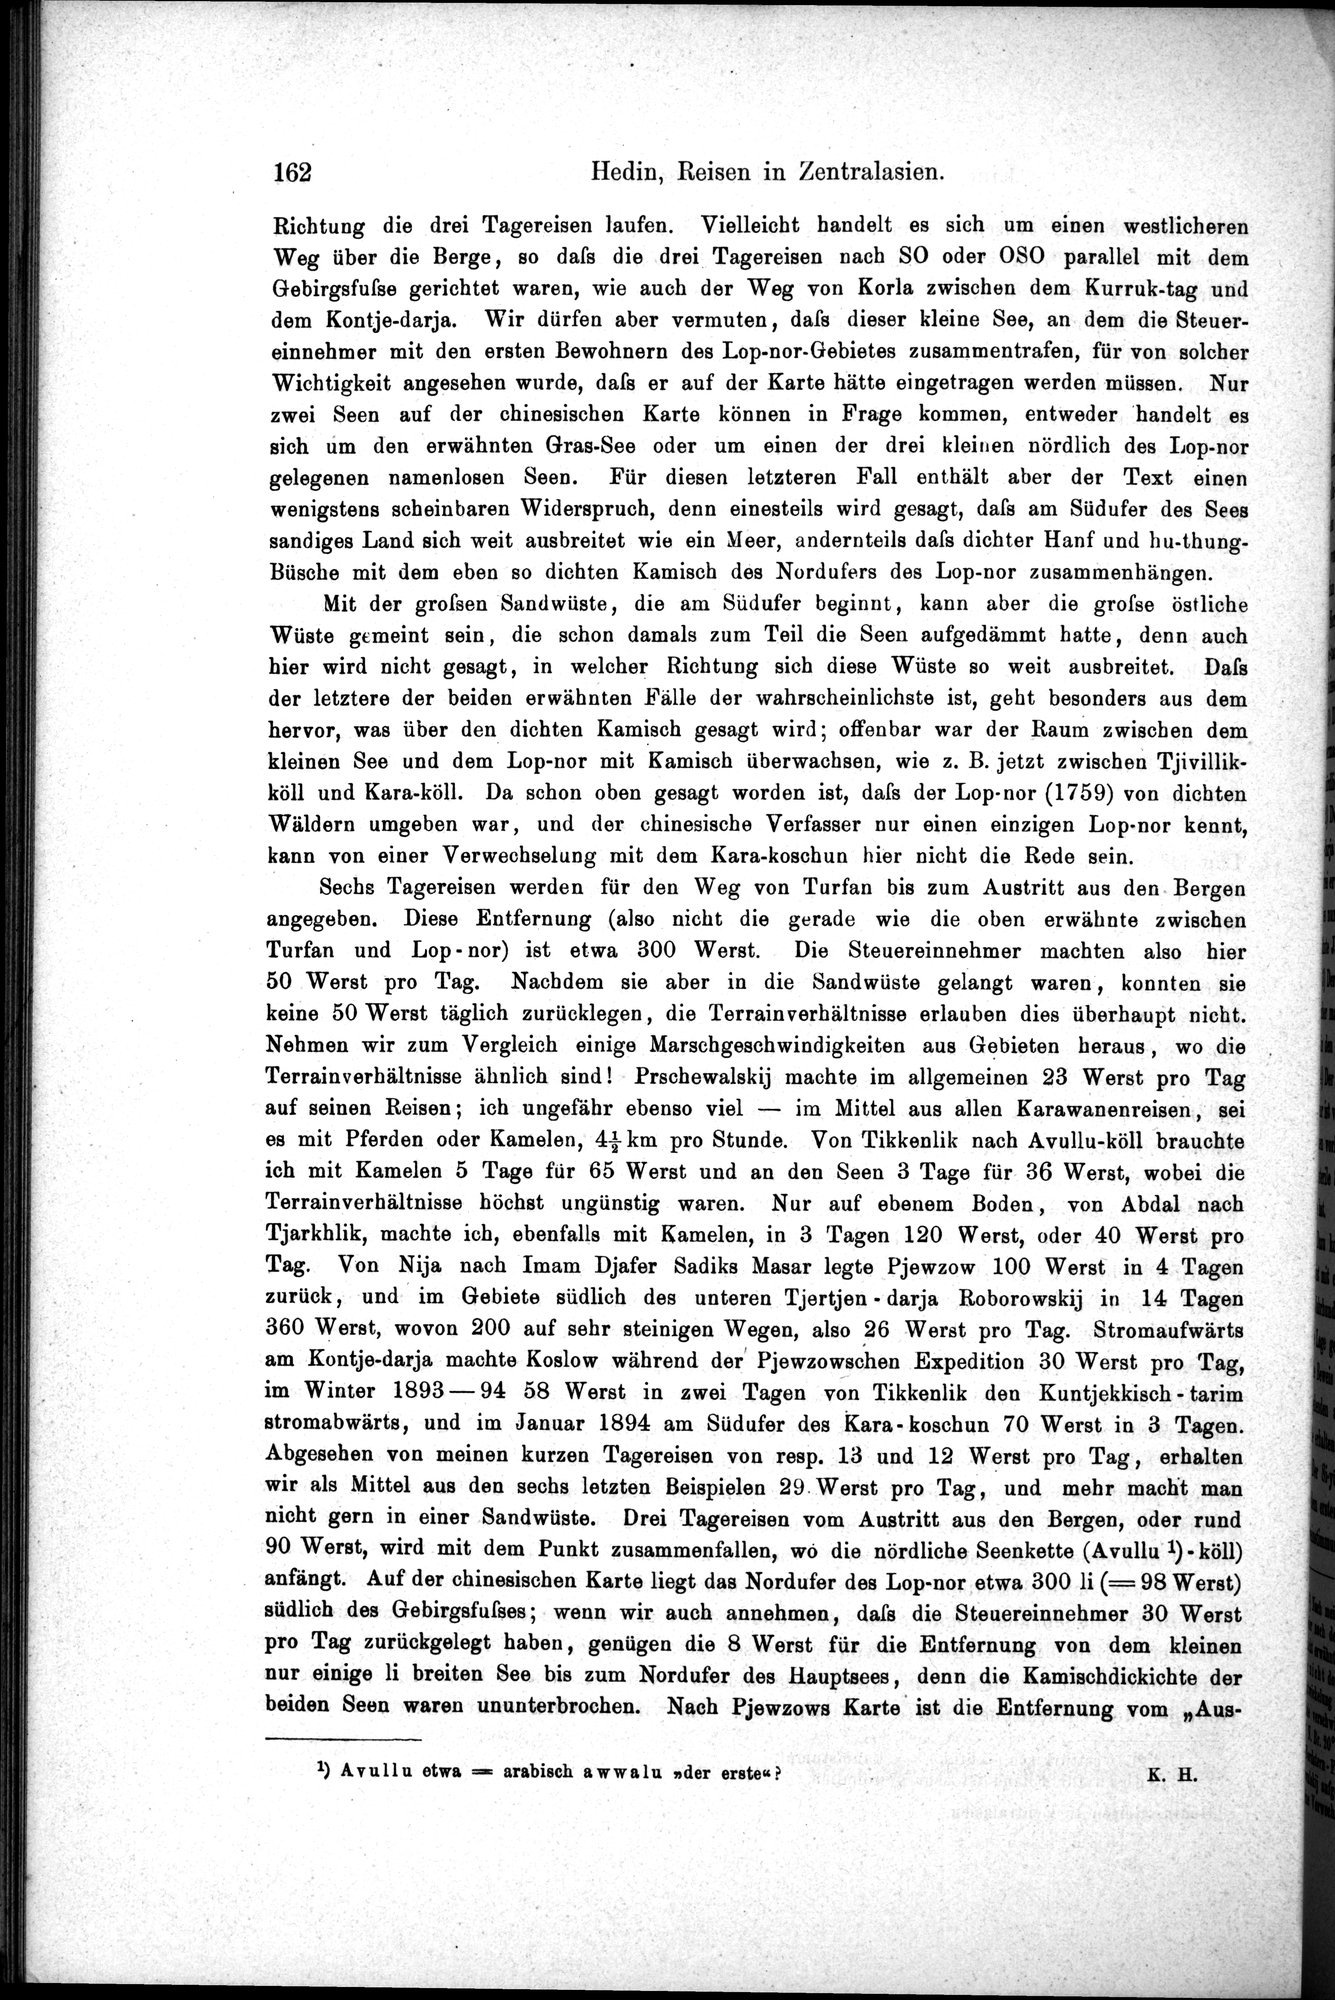 Die Geographische-Wissenschaftlichen Ergebnisse meiner Reisen in Zentralasien, 1894-1897 : vol.1 / Page 174 (Grayscale High Resolution Image)